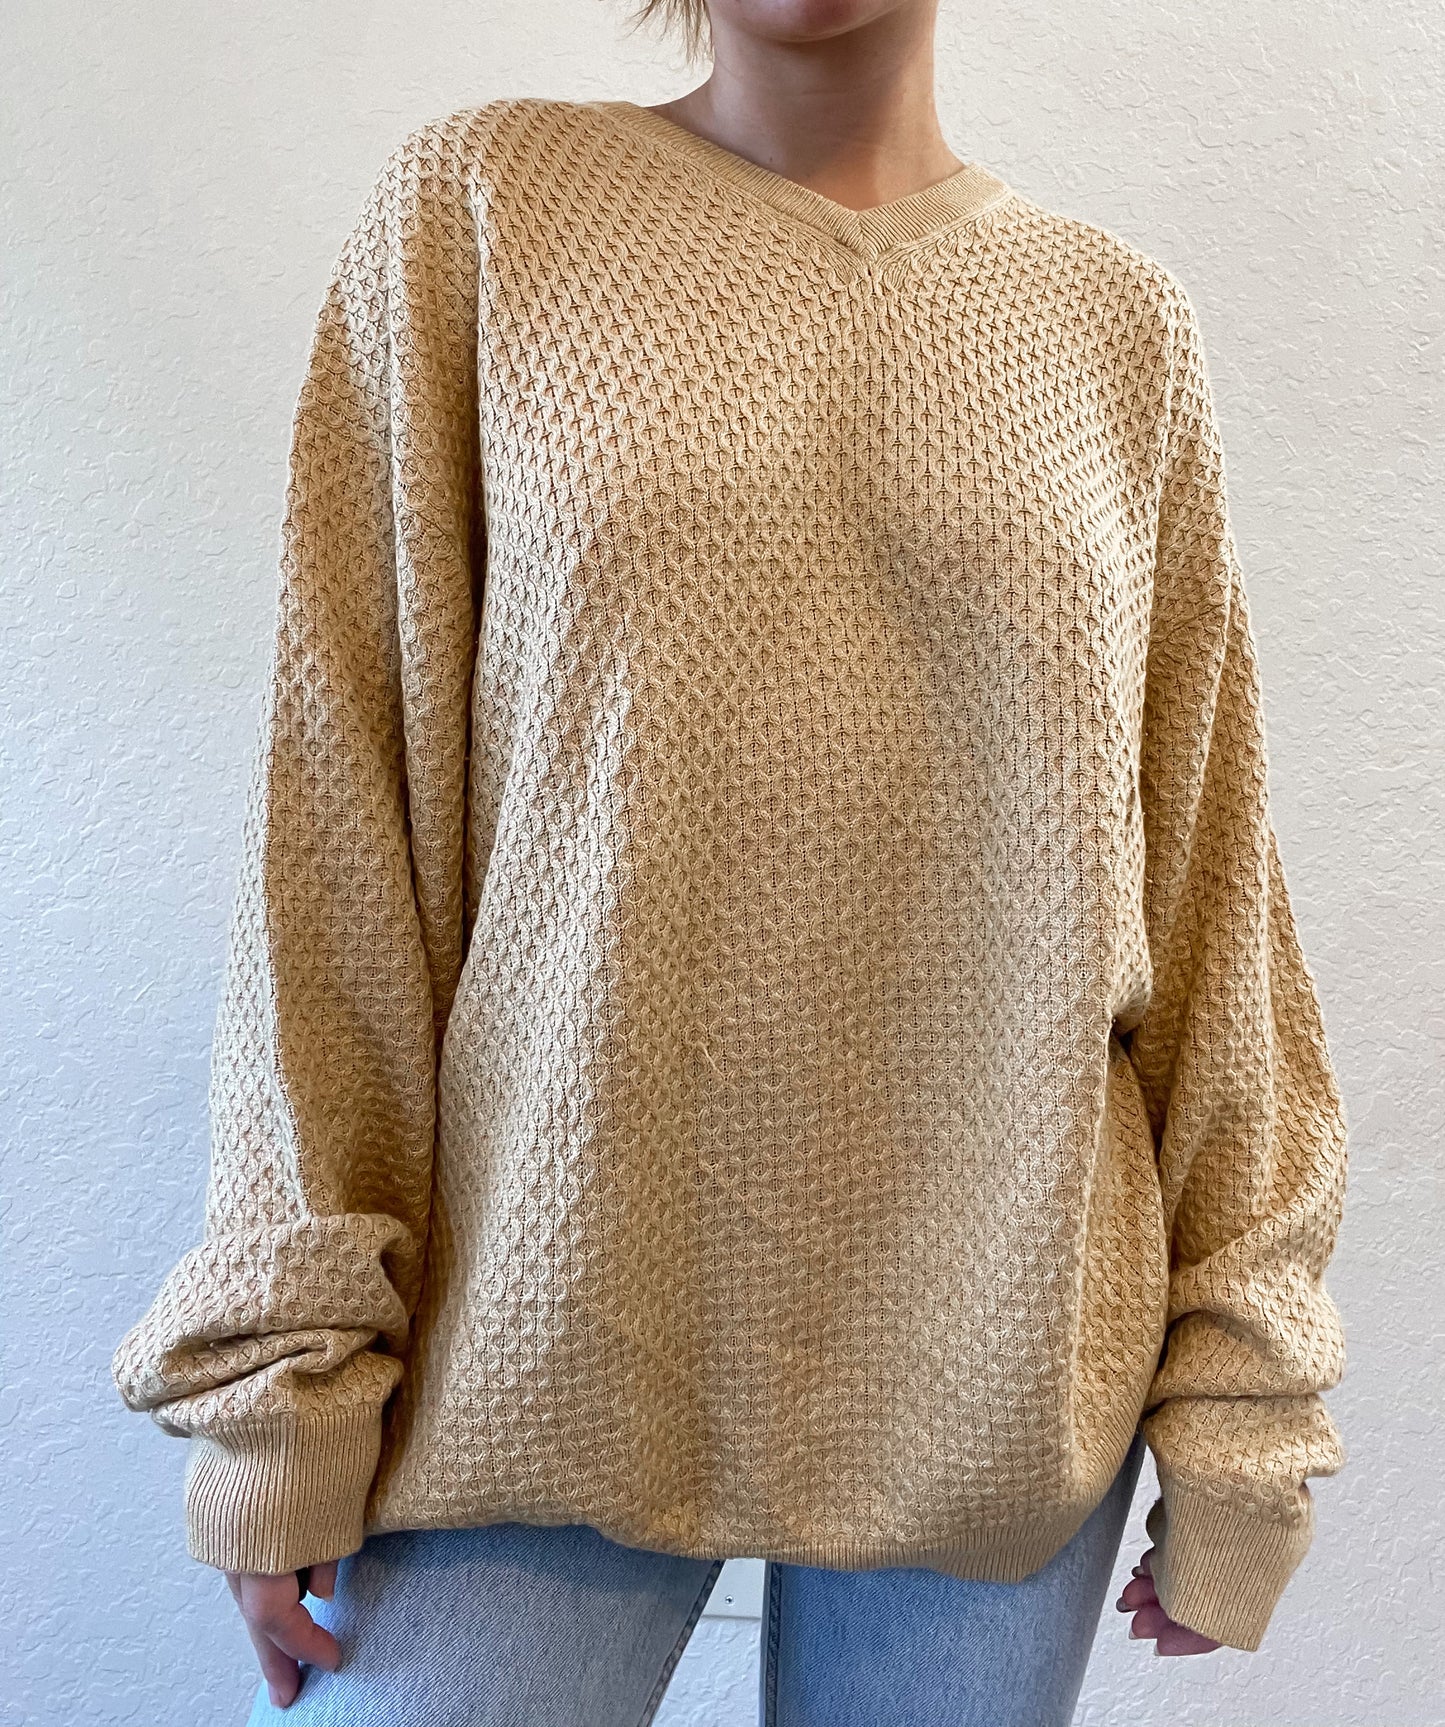 Tan sweater